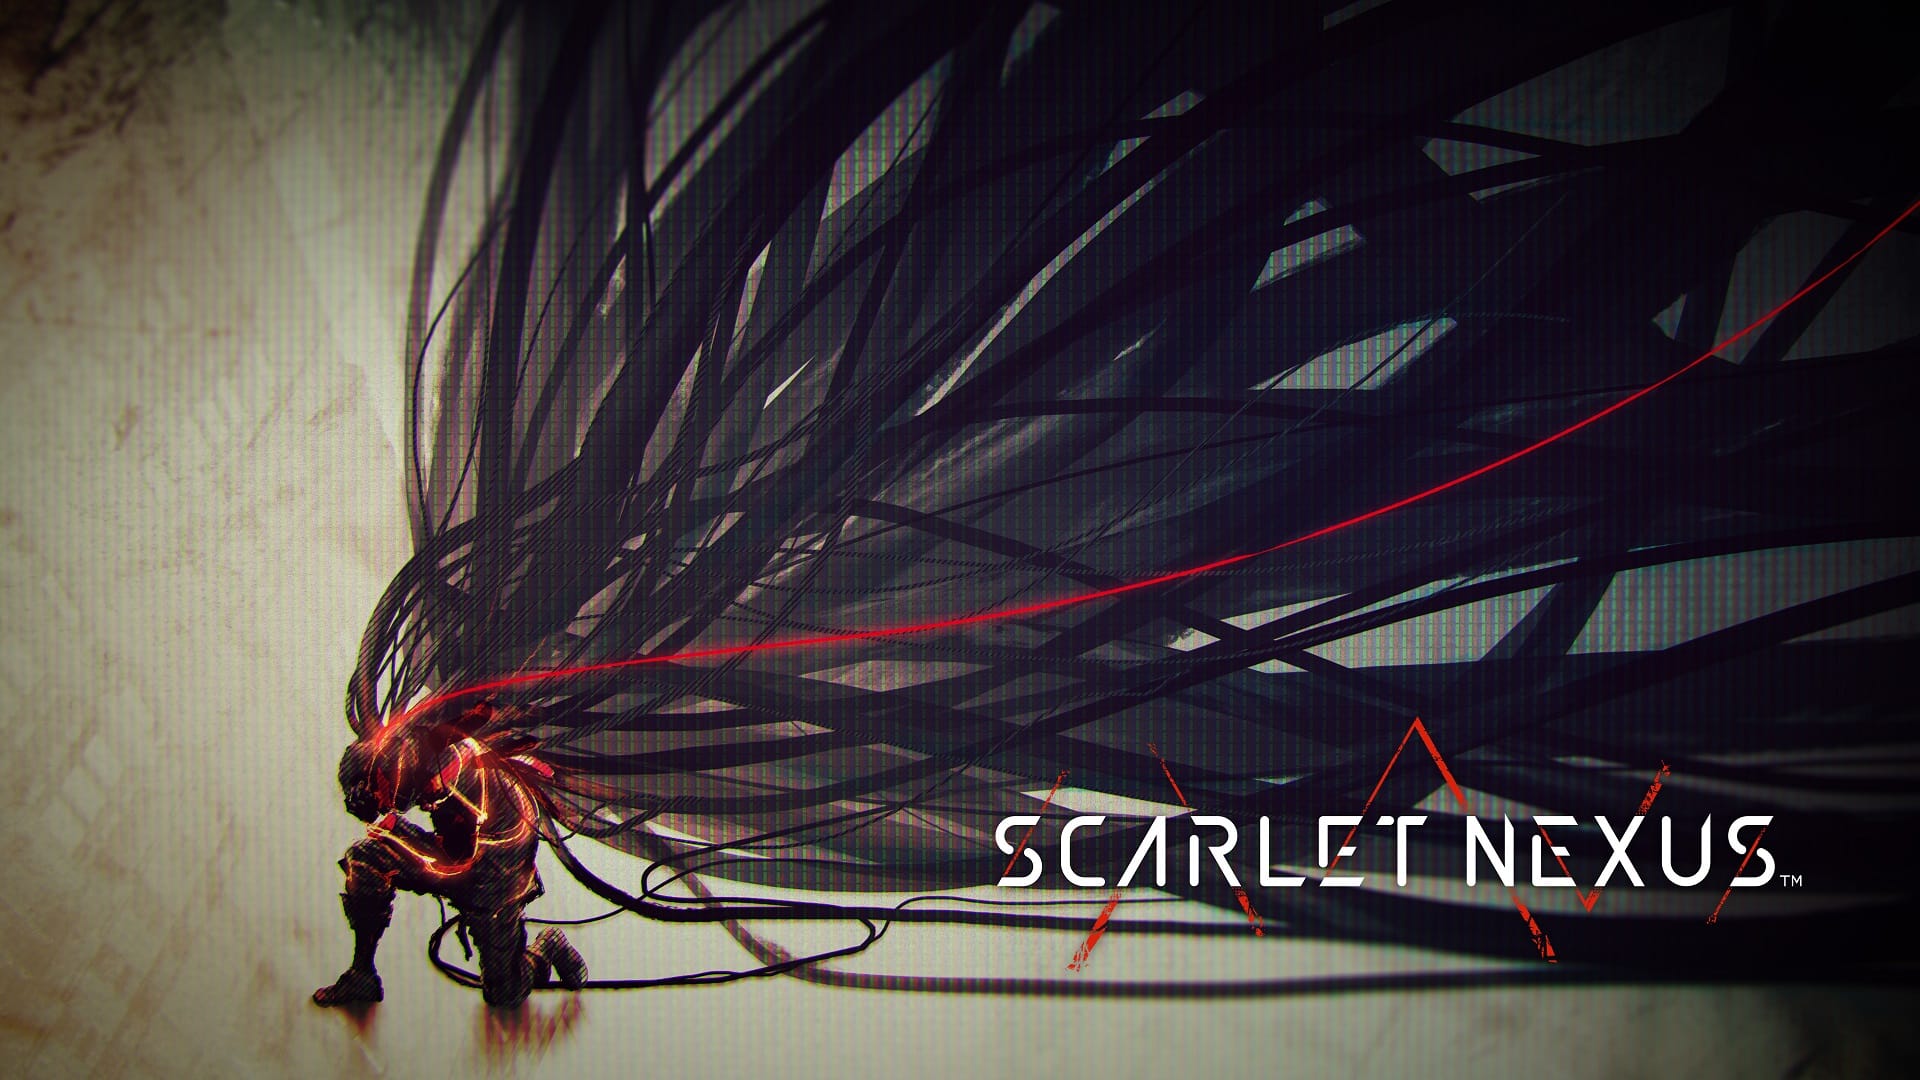 Scarlet Nexus review, Mind-blowing